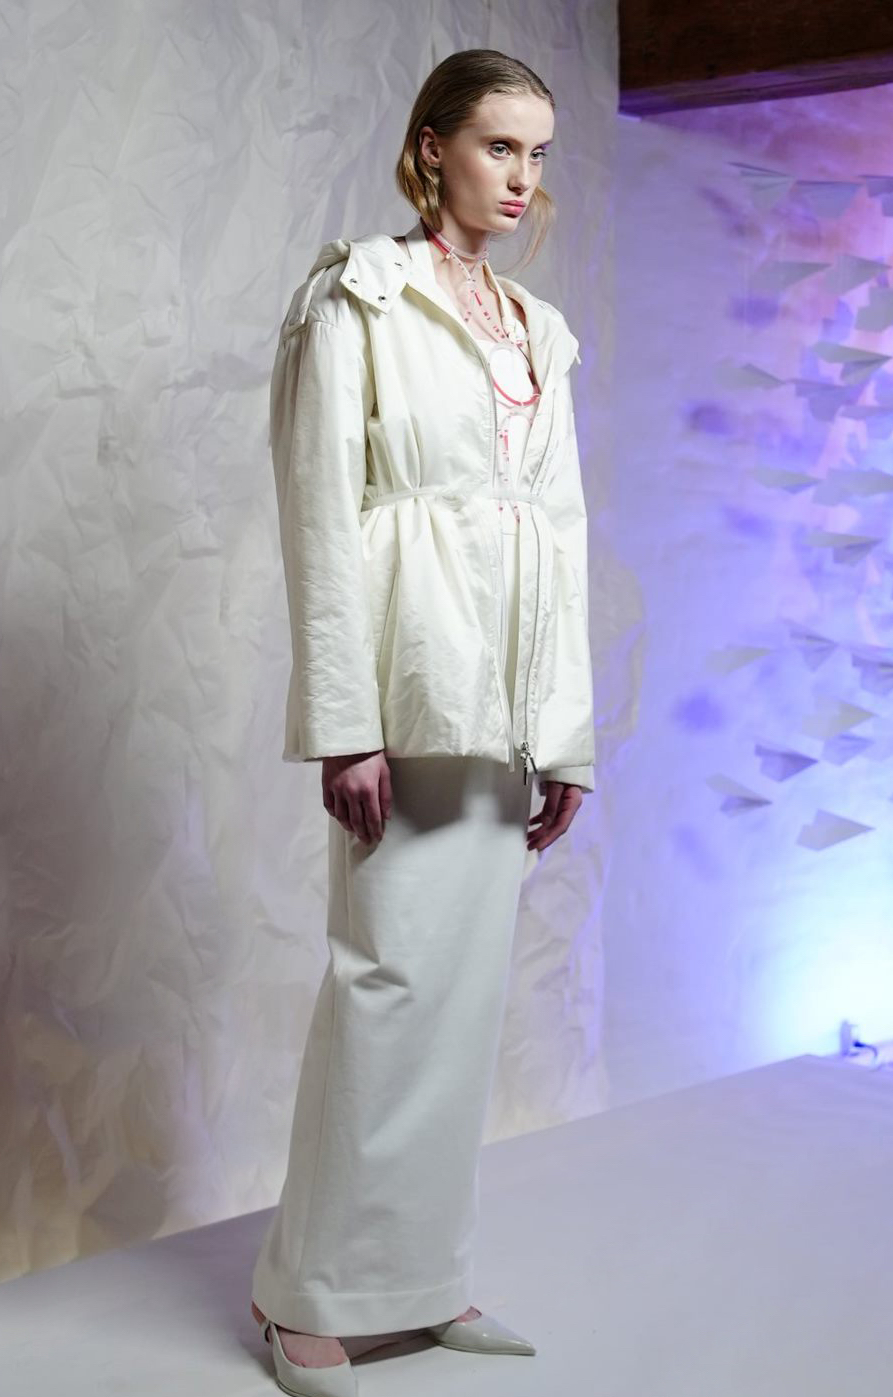 українські бренди показали колекції на Тижні моди в Копенгагені